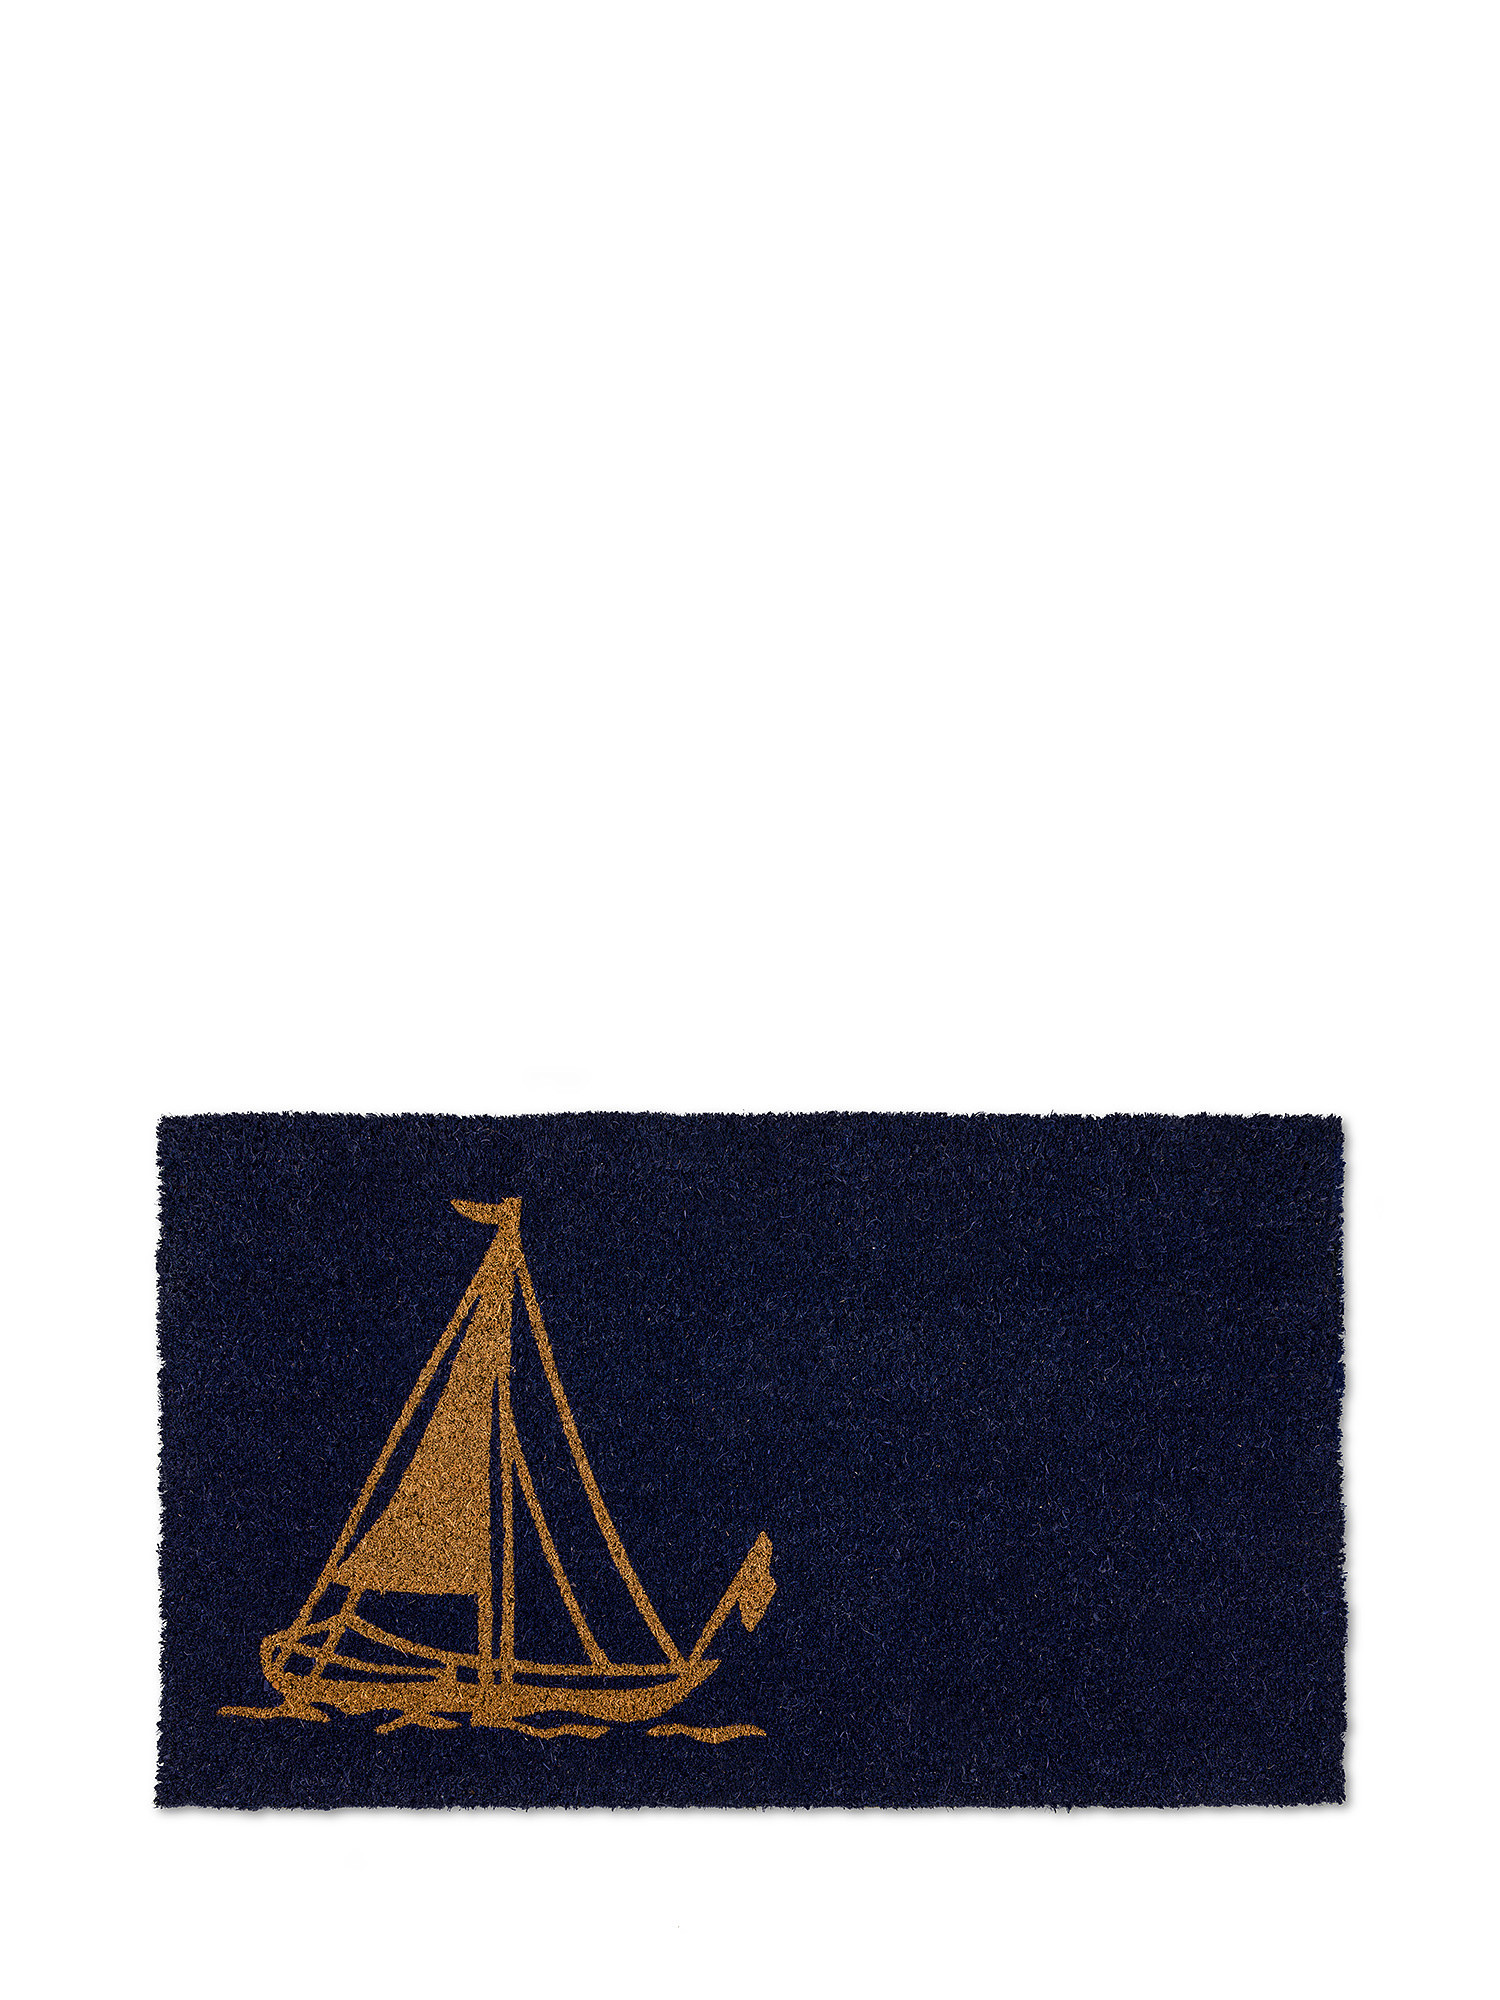 Boat print doormat, Blue, large image number 0